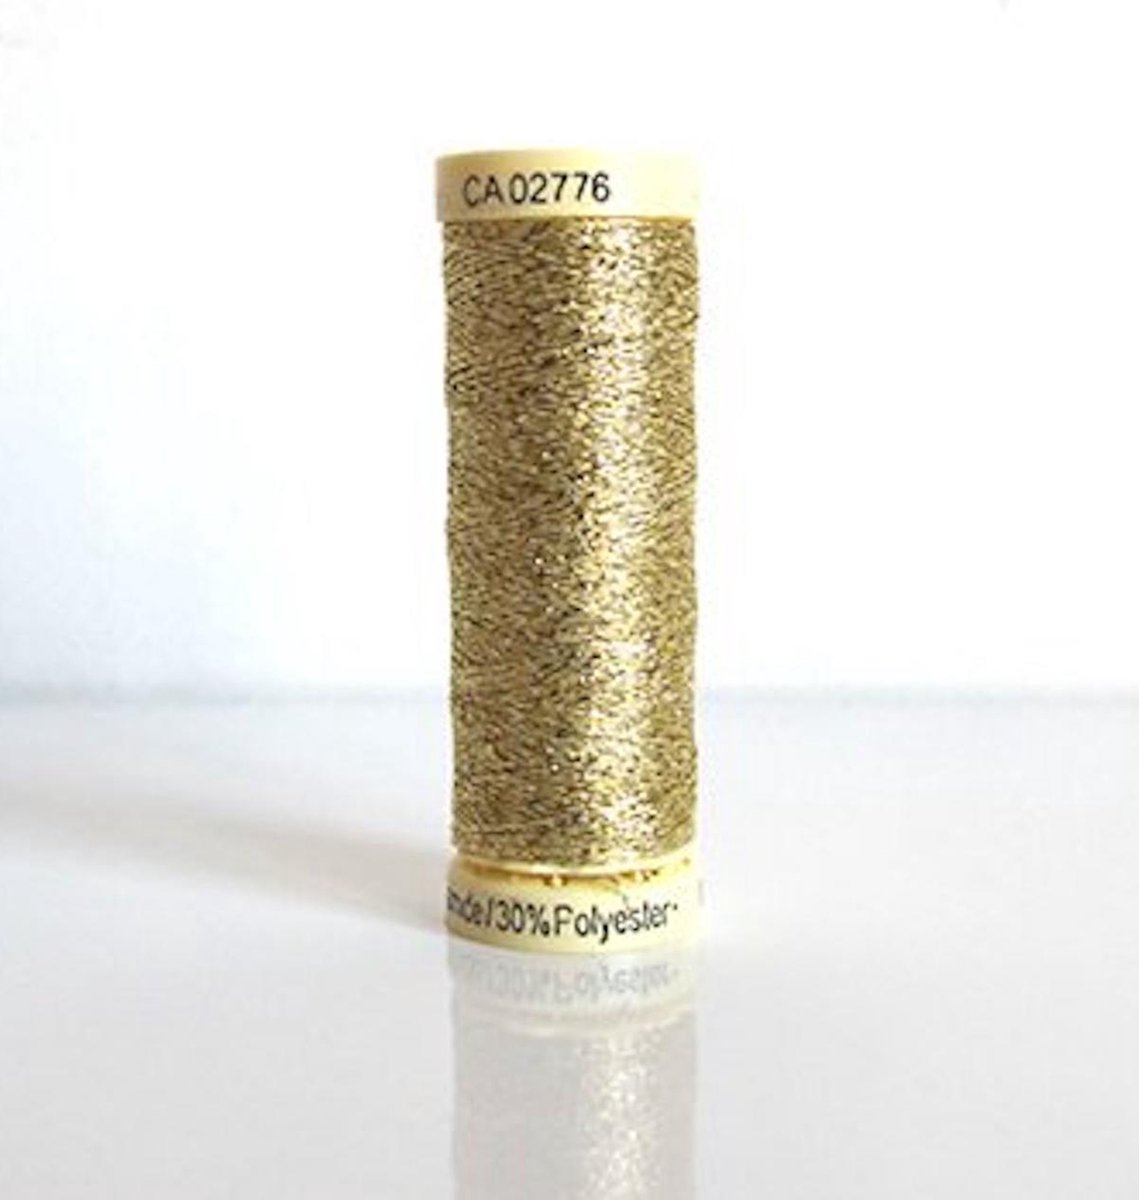 Afbeelding van product Gütermann creativ garen echt goud metallic - CA2776 - col 24 - real gold - 50 m w331- borduurgaren en naaigaren met glitters